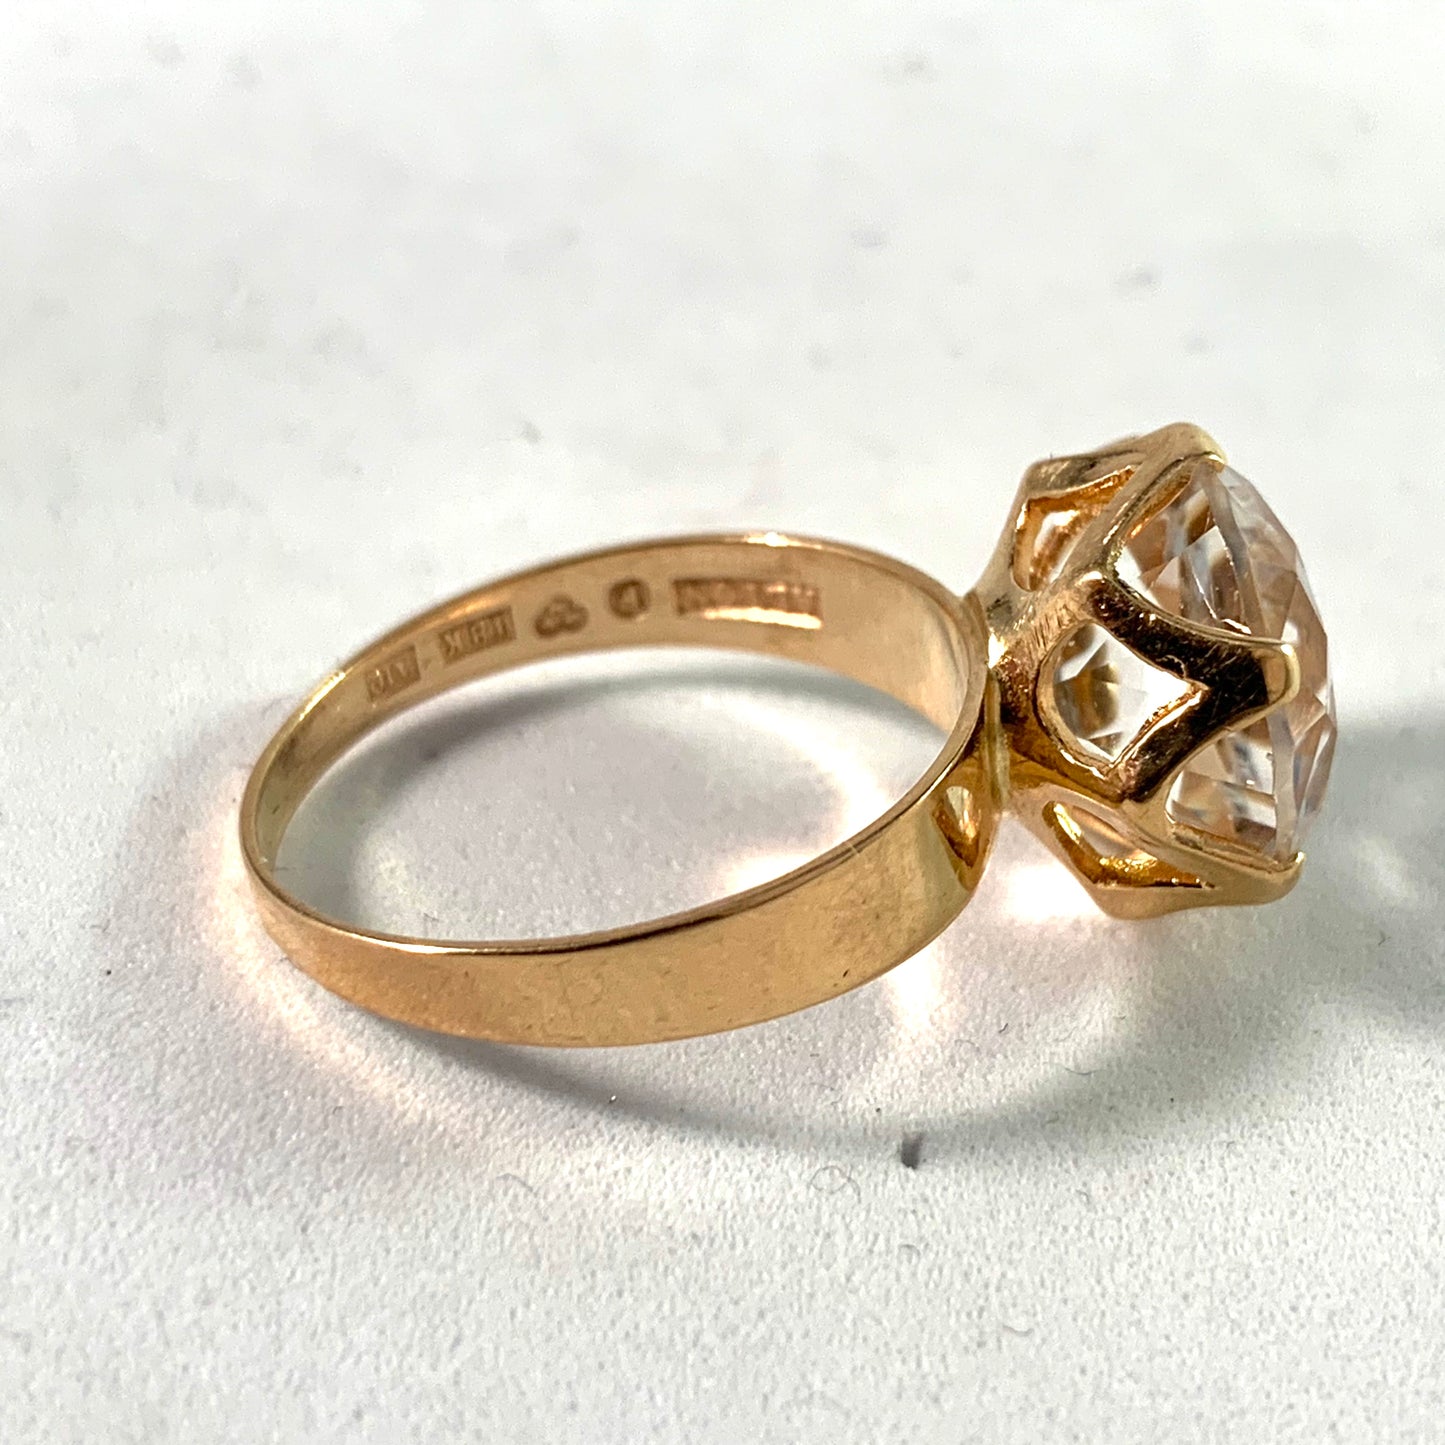 Alton, Sweden 1975 Modernist 18k Gold Rock Crystal Ring.